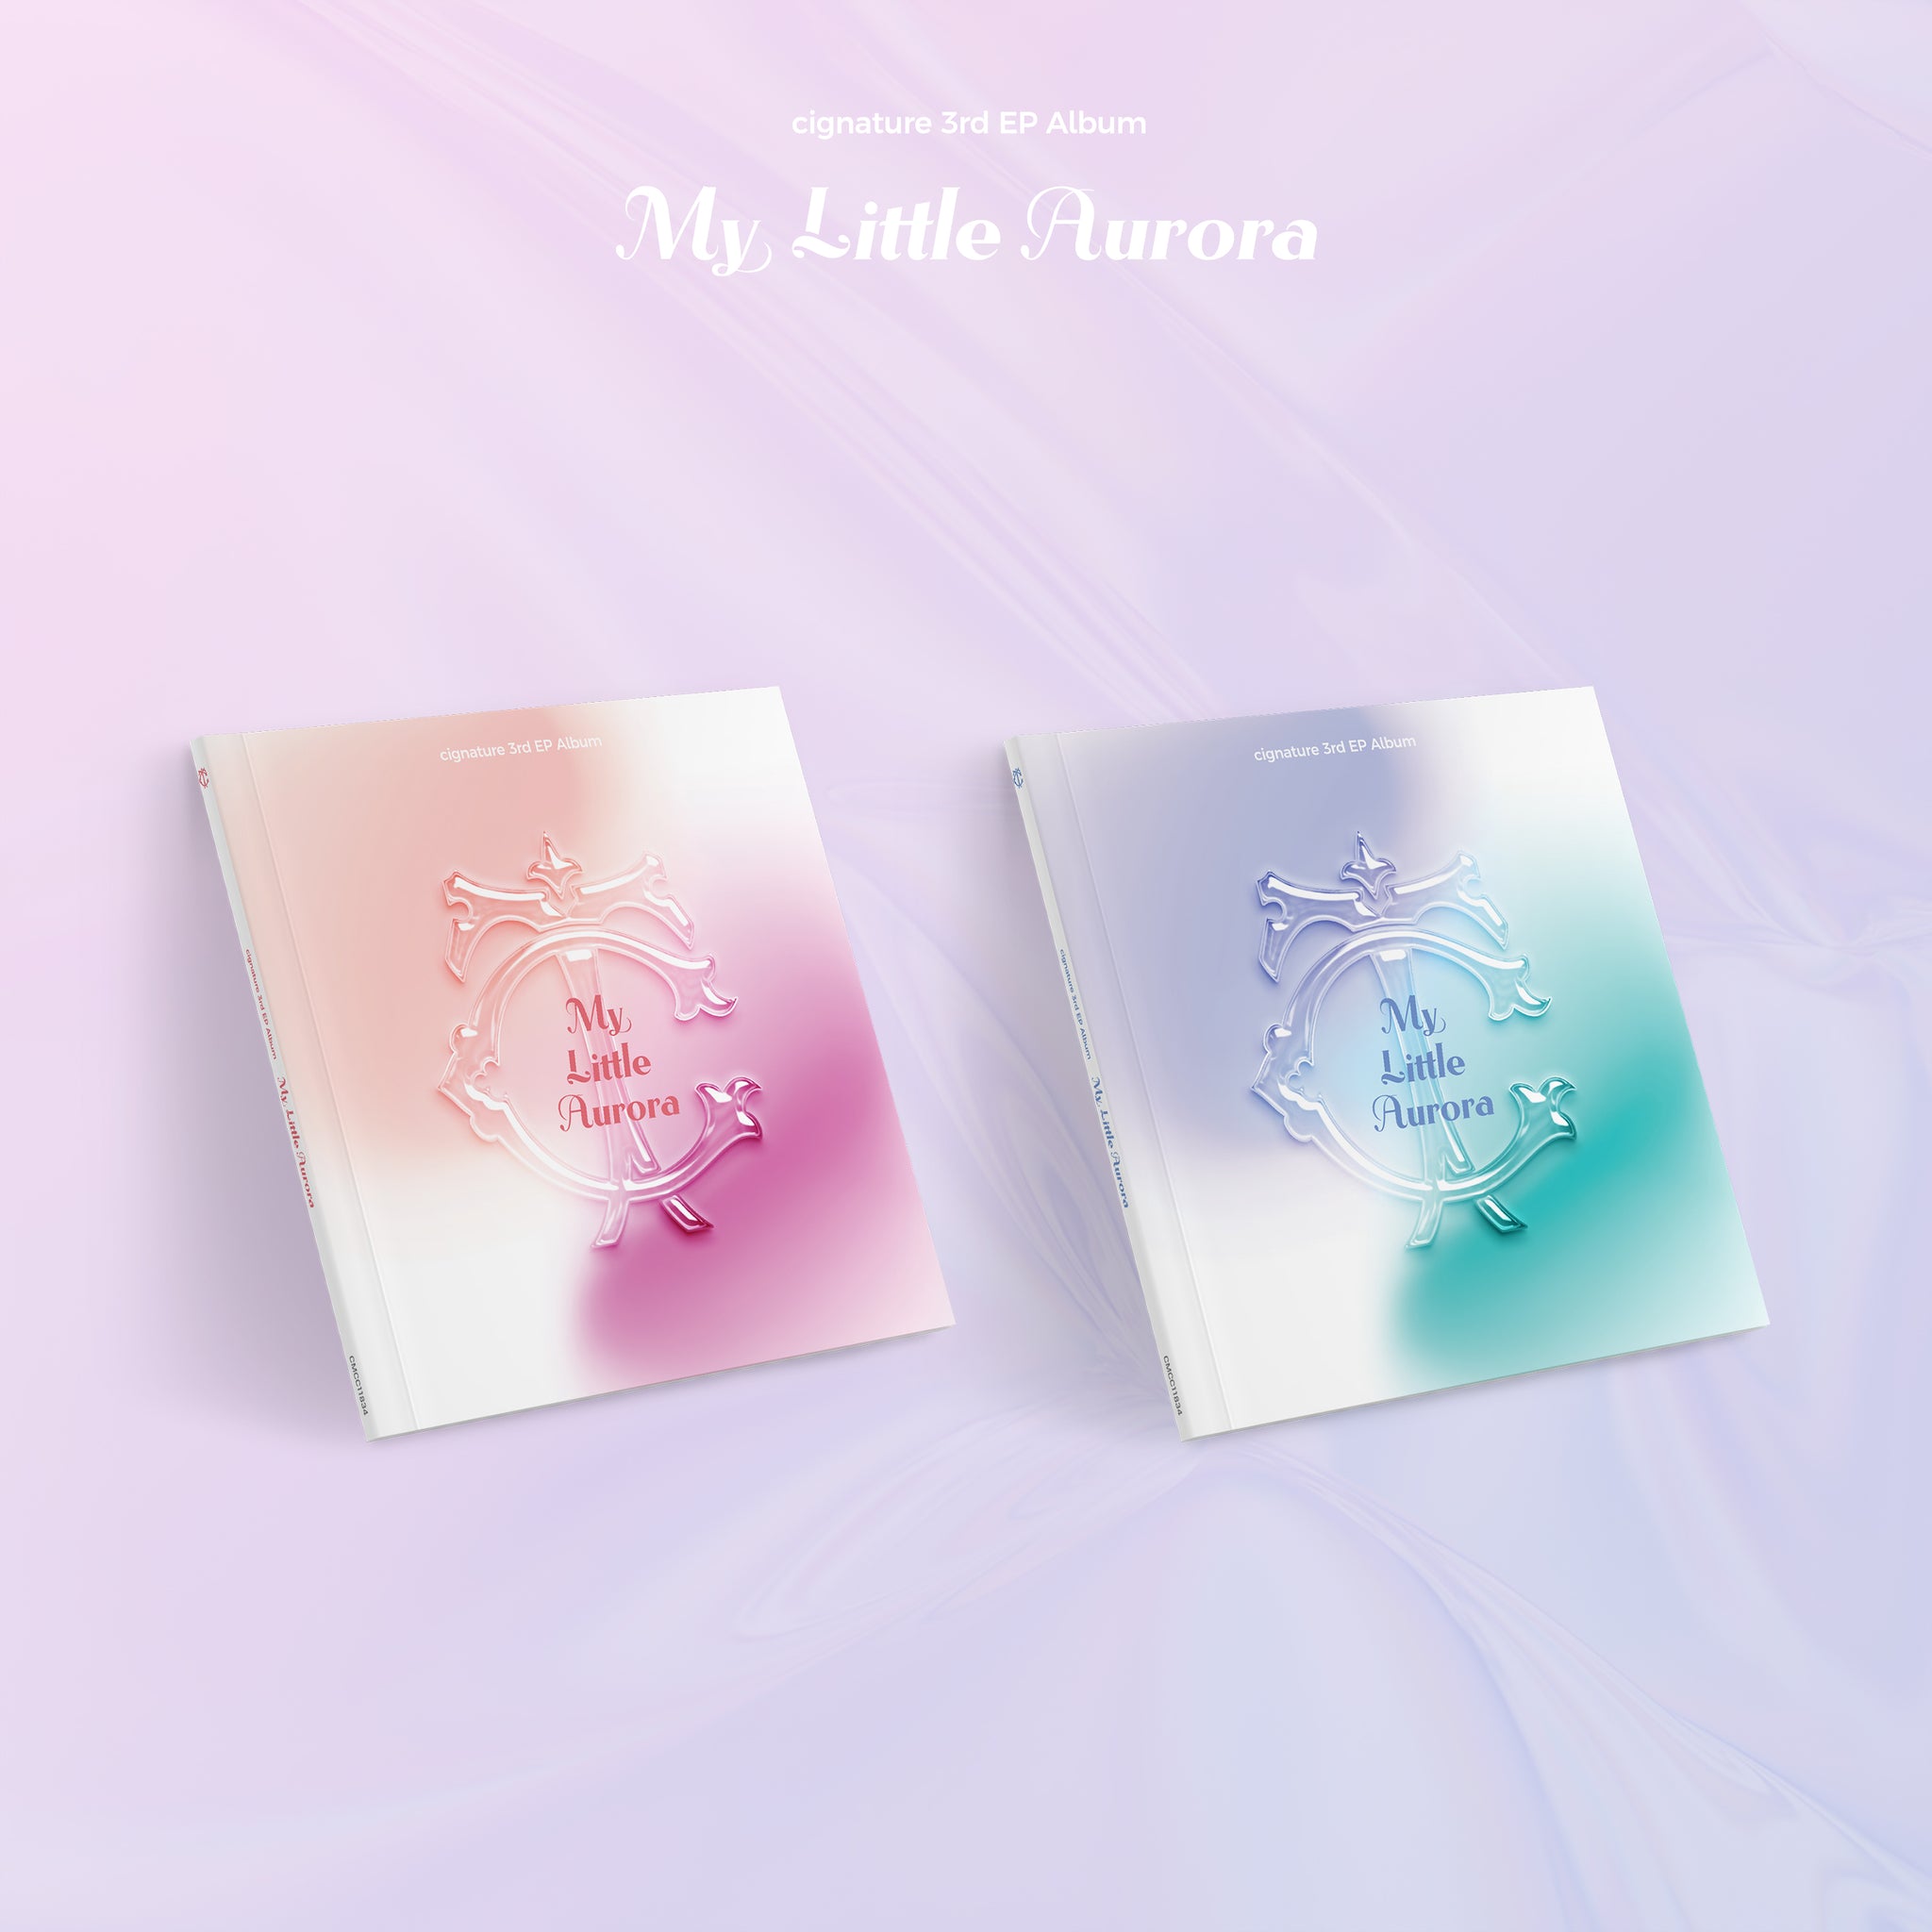 CIGNATURE 3RD EP ALBUM 'MY LITTLE AURORA' COVER